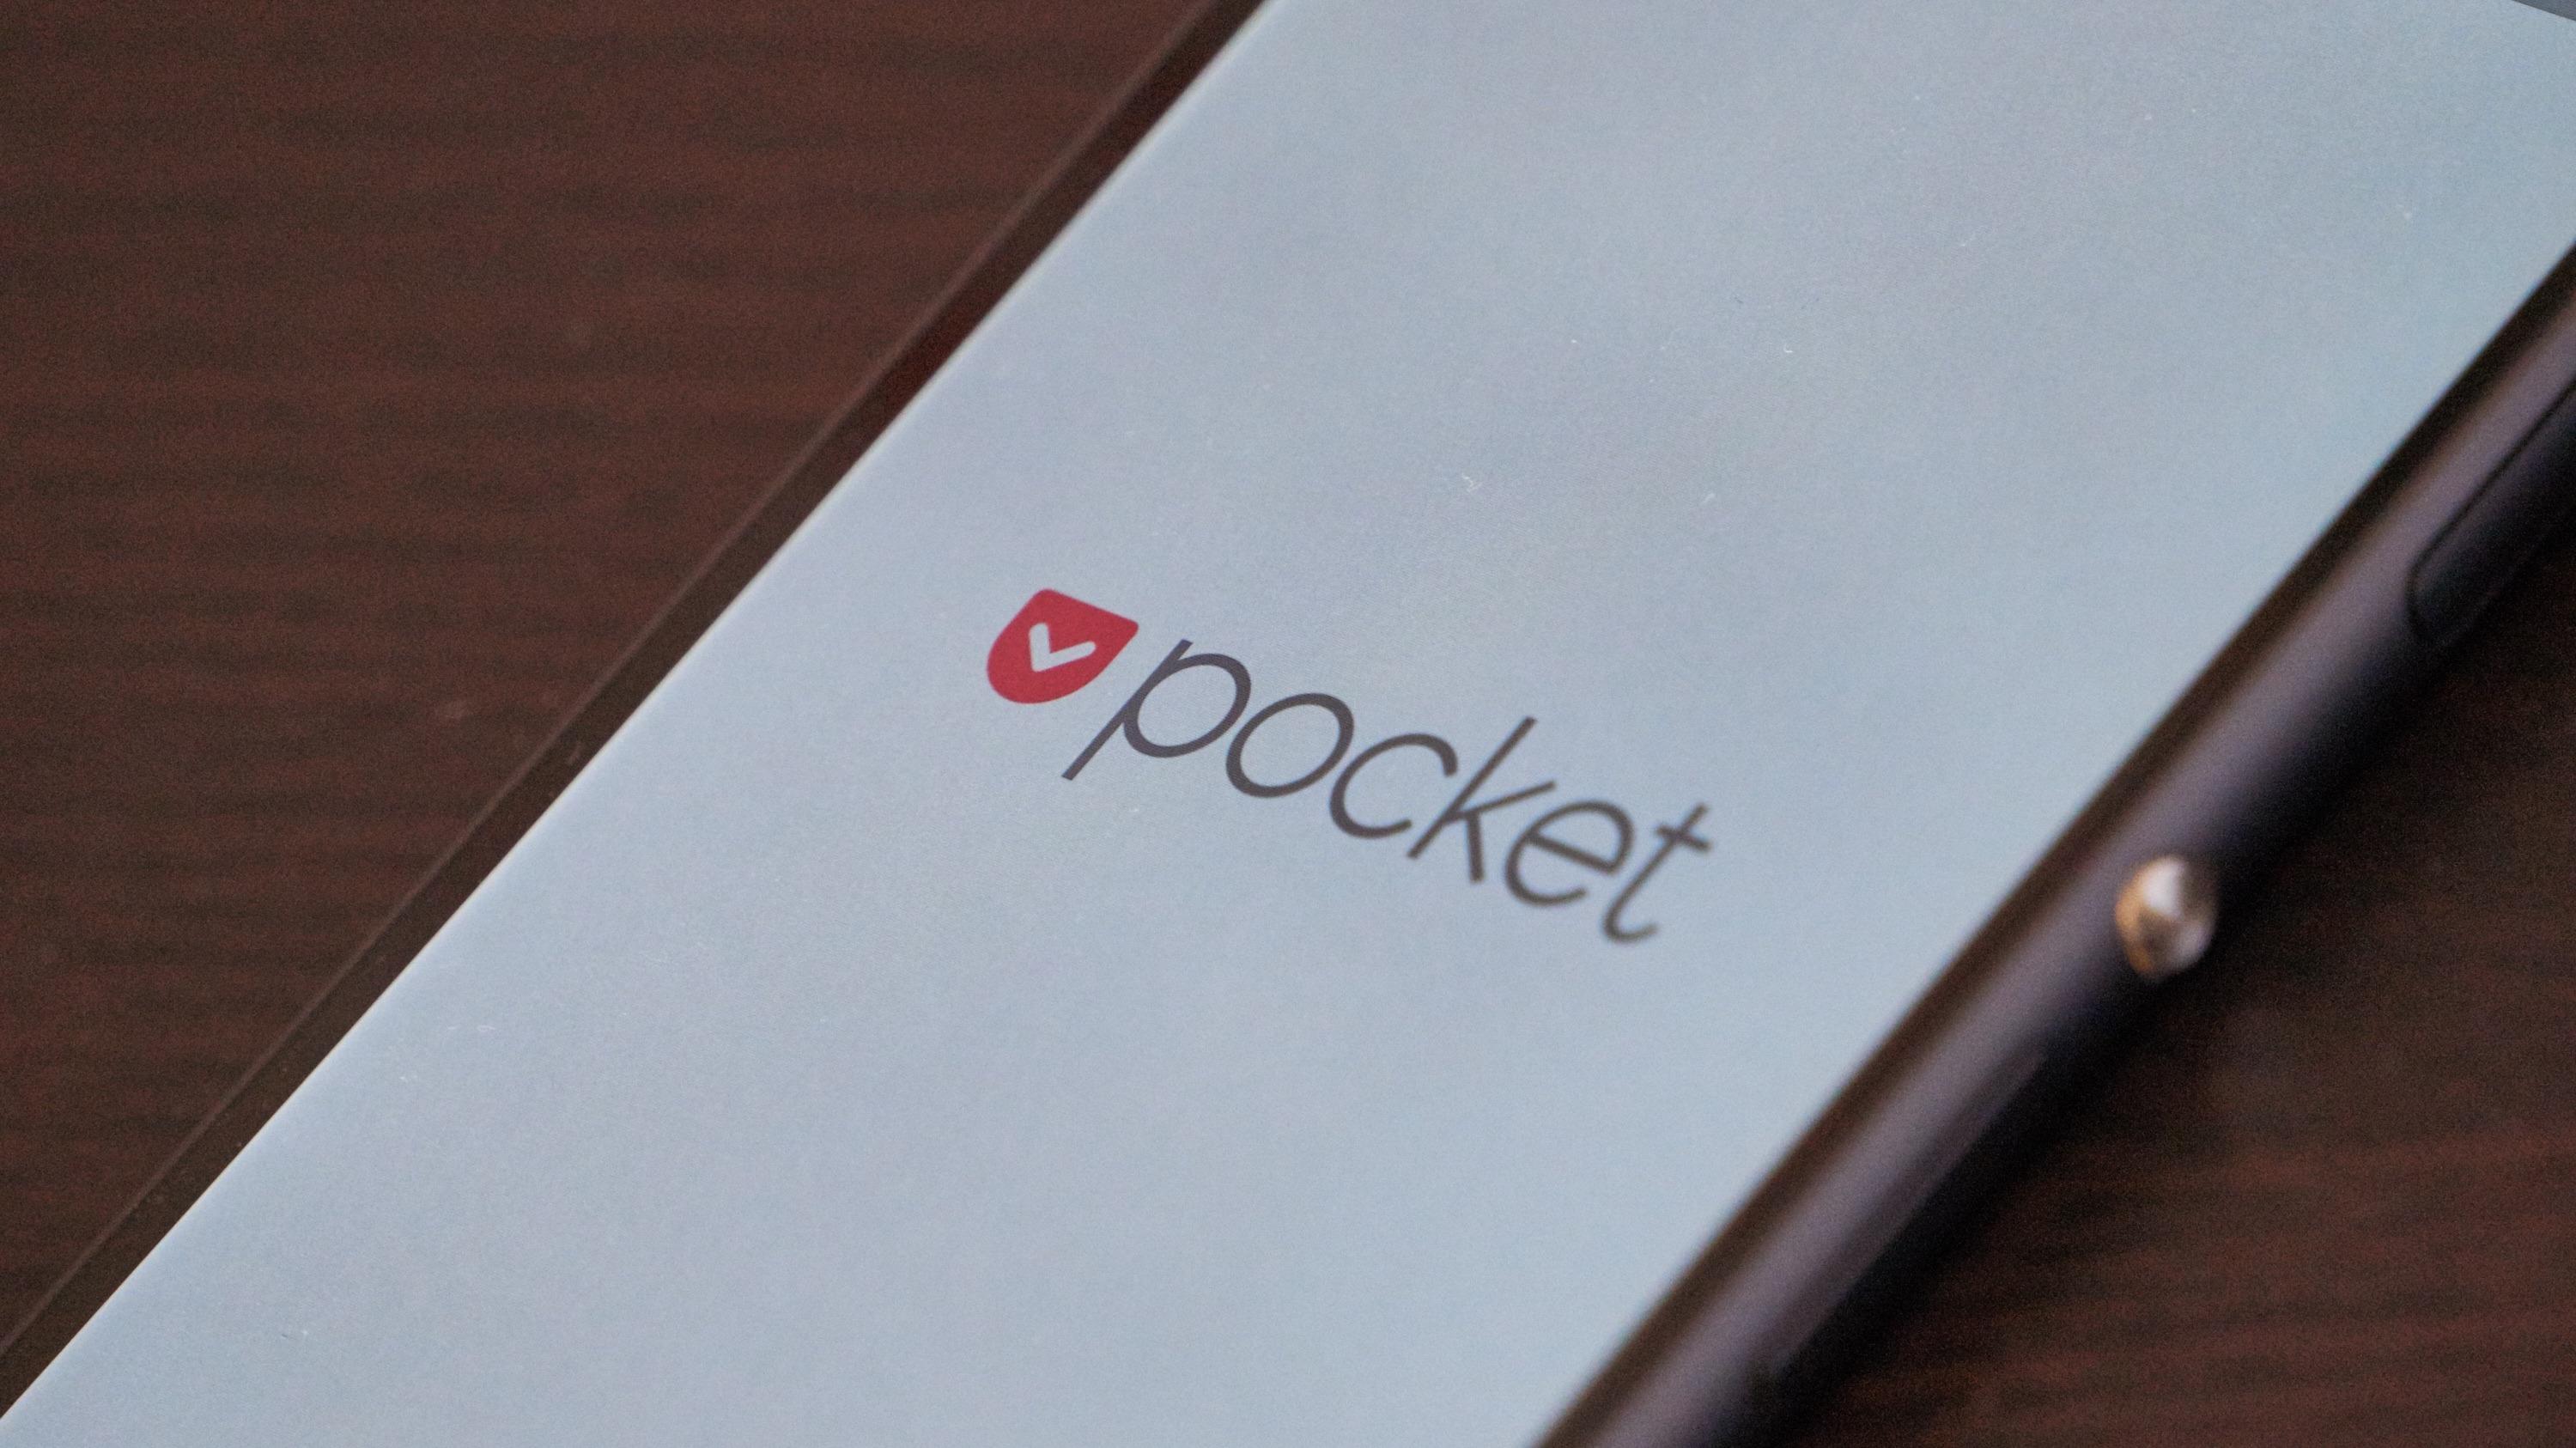 Pocket som app er en ren og stilig affære, noe startskjermen også vitner om.